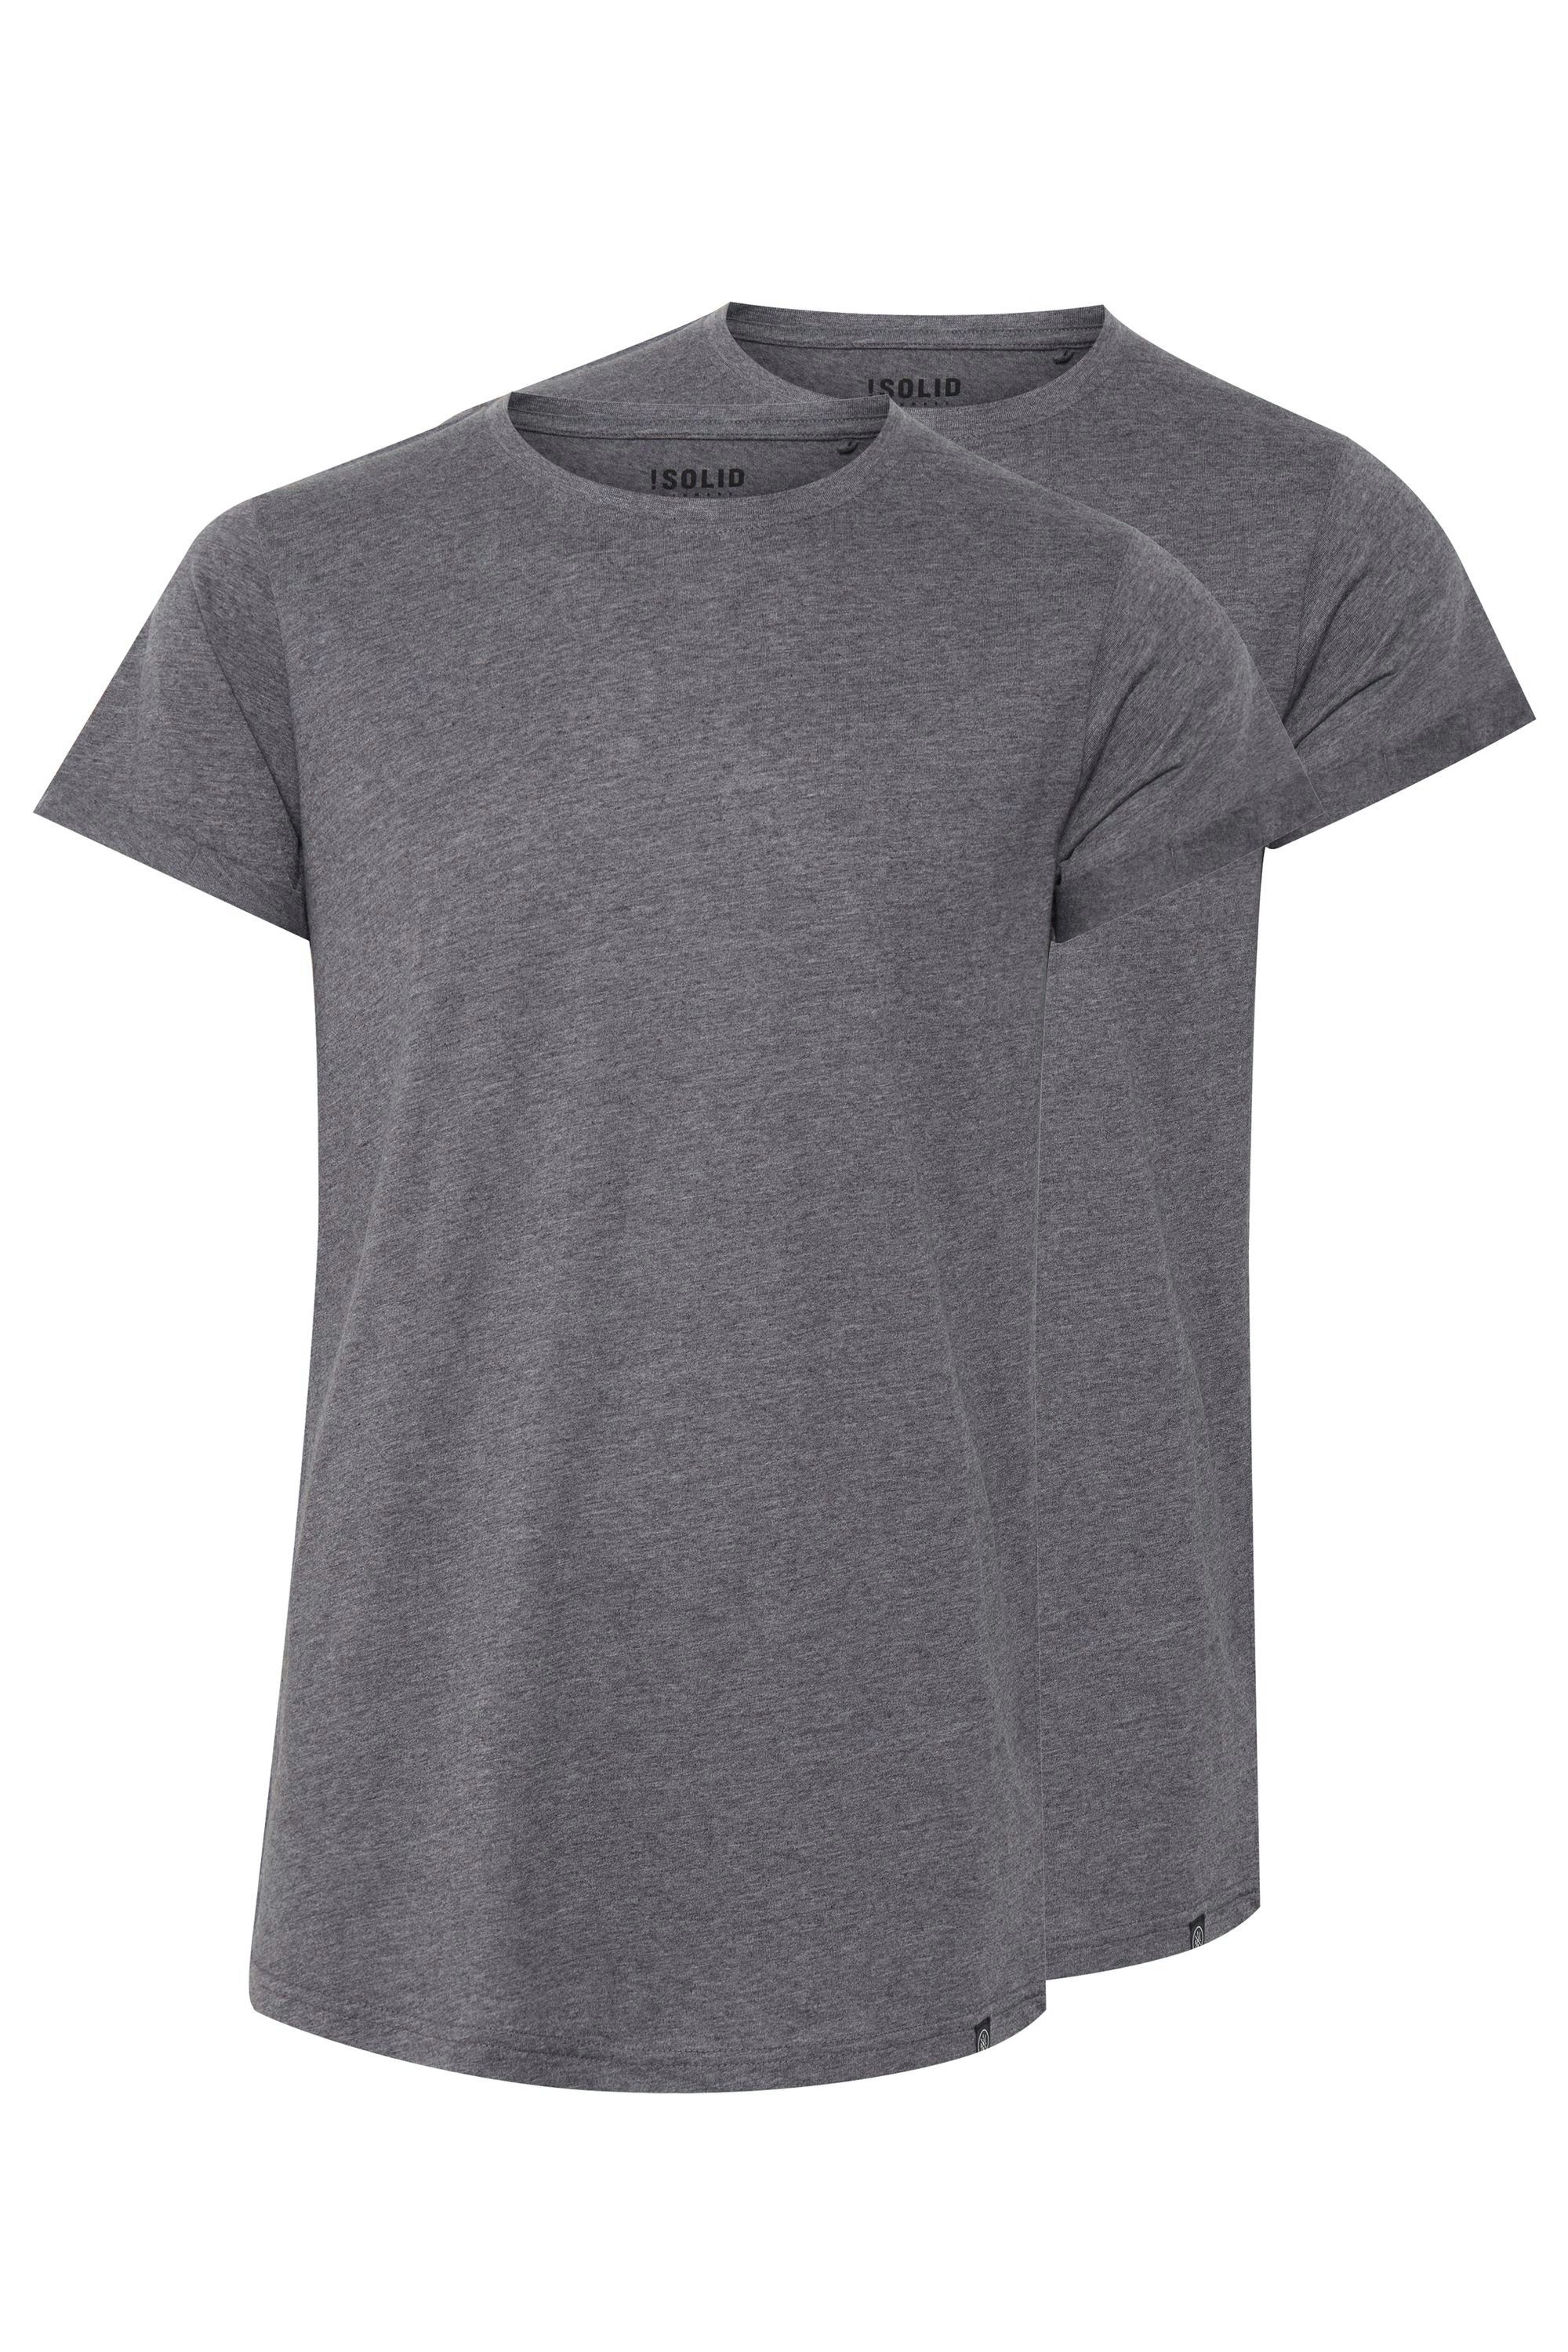 !Solid Longshirt SDLongo T-Shirt im 2er-Pack Grey Melange (8236)